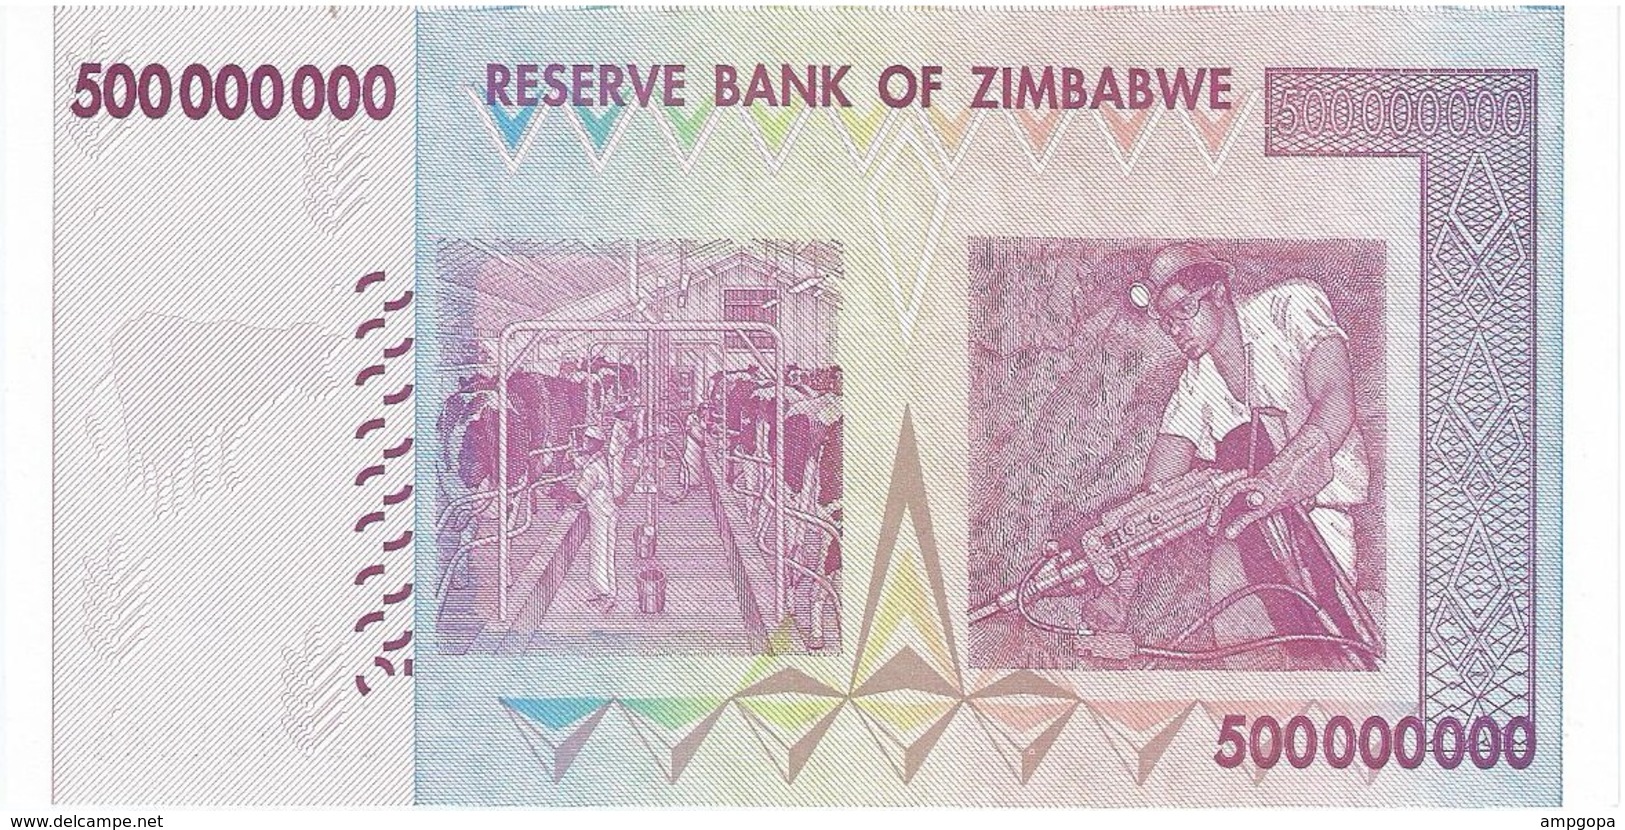 Zimbabwe 500.000.000 Dollars 2008 Pick 82 UNC - Zimbabwe